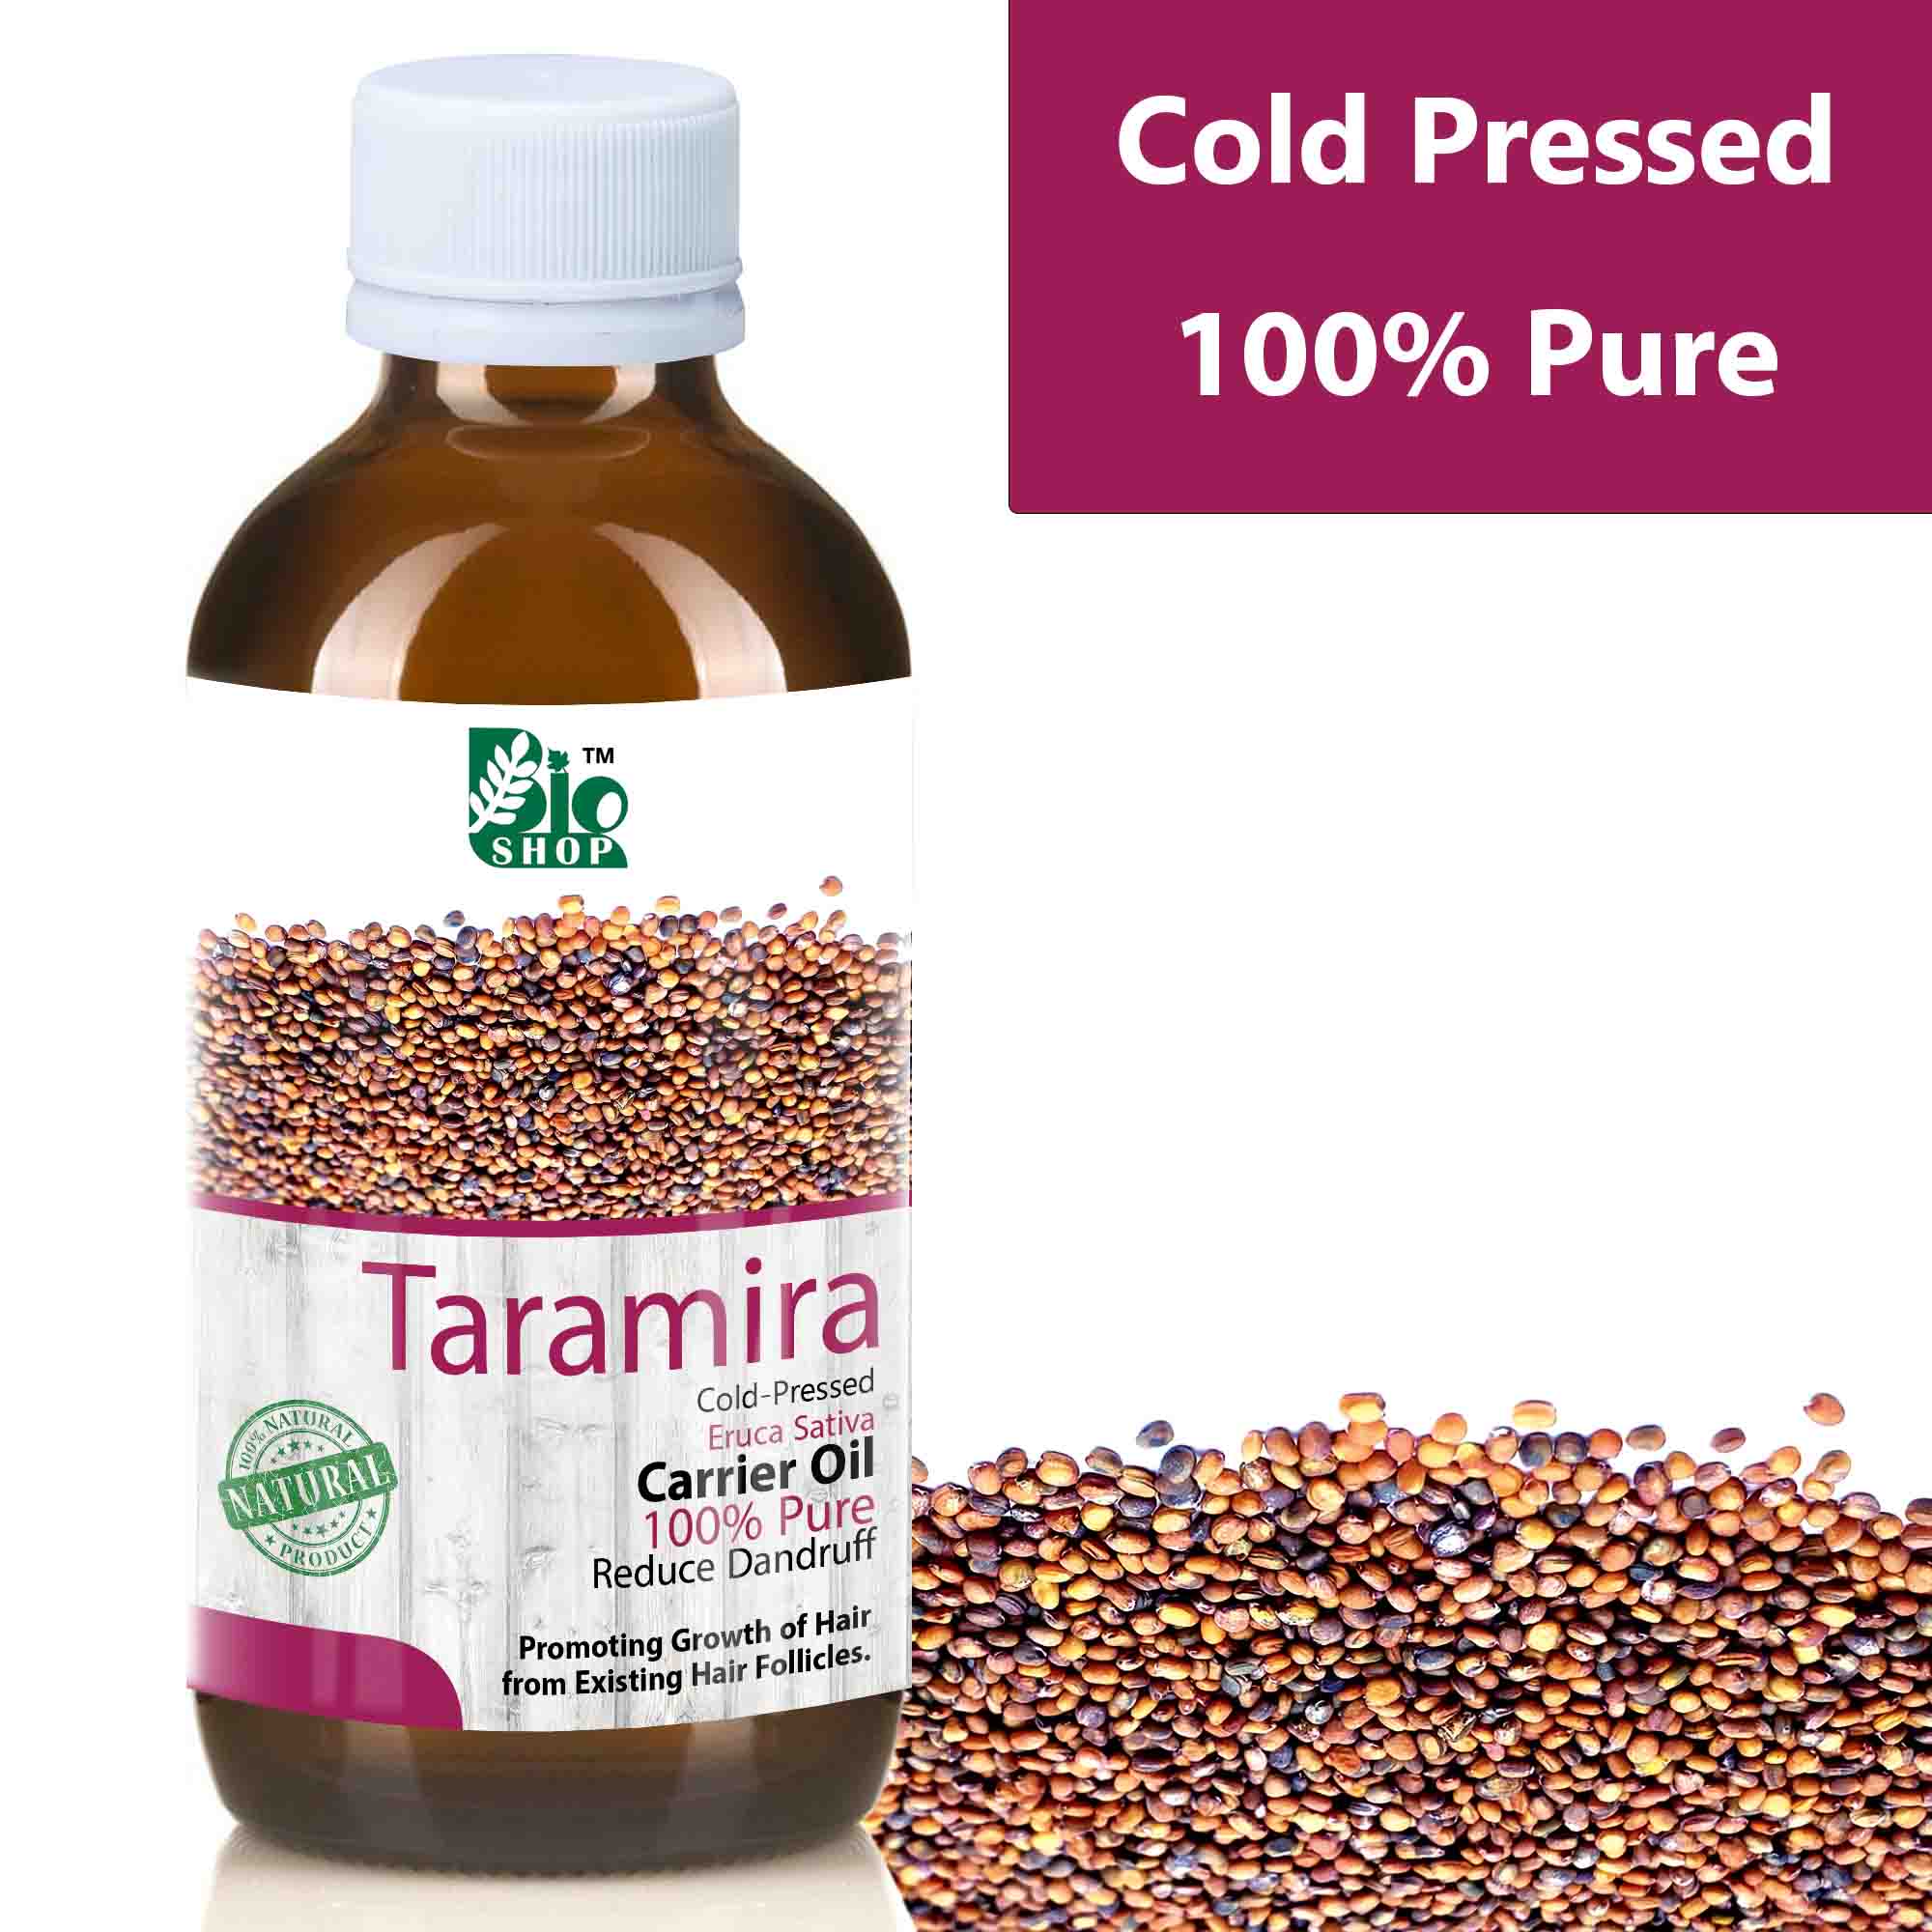 What Is Taramira Oil Good For